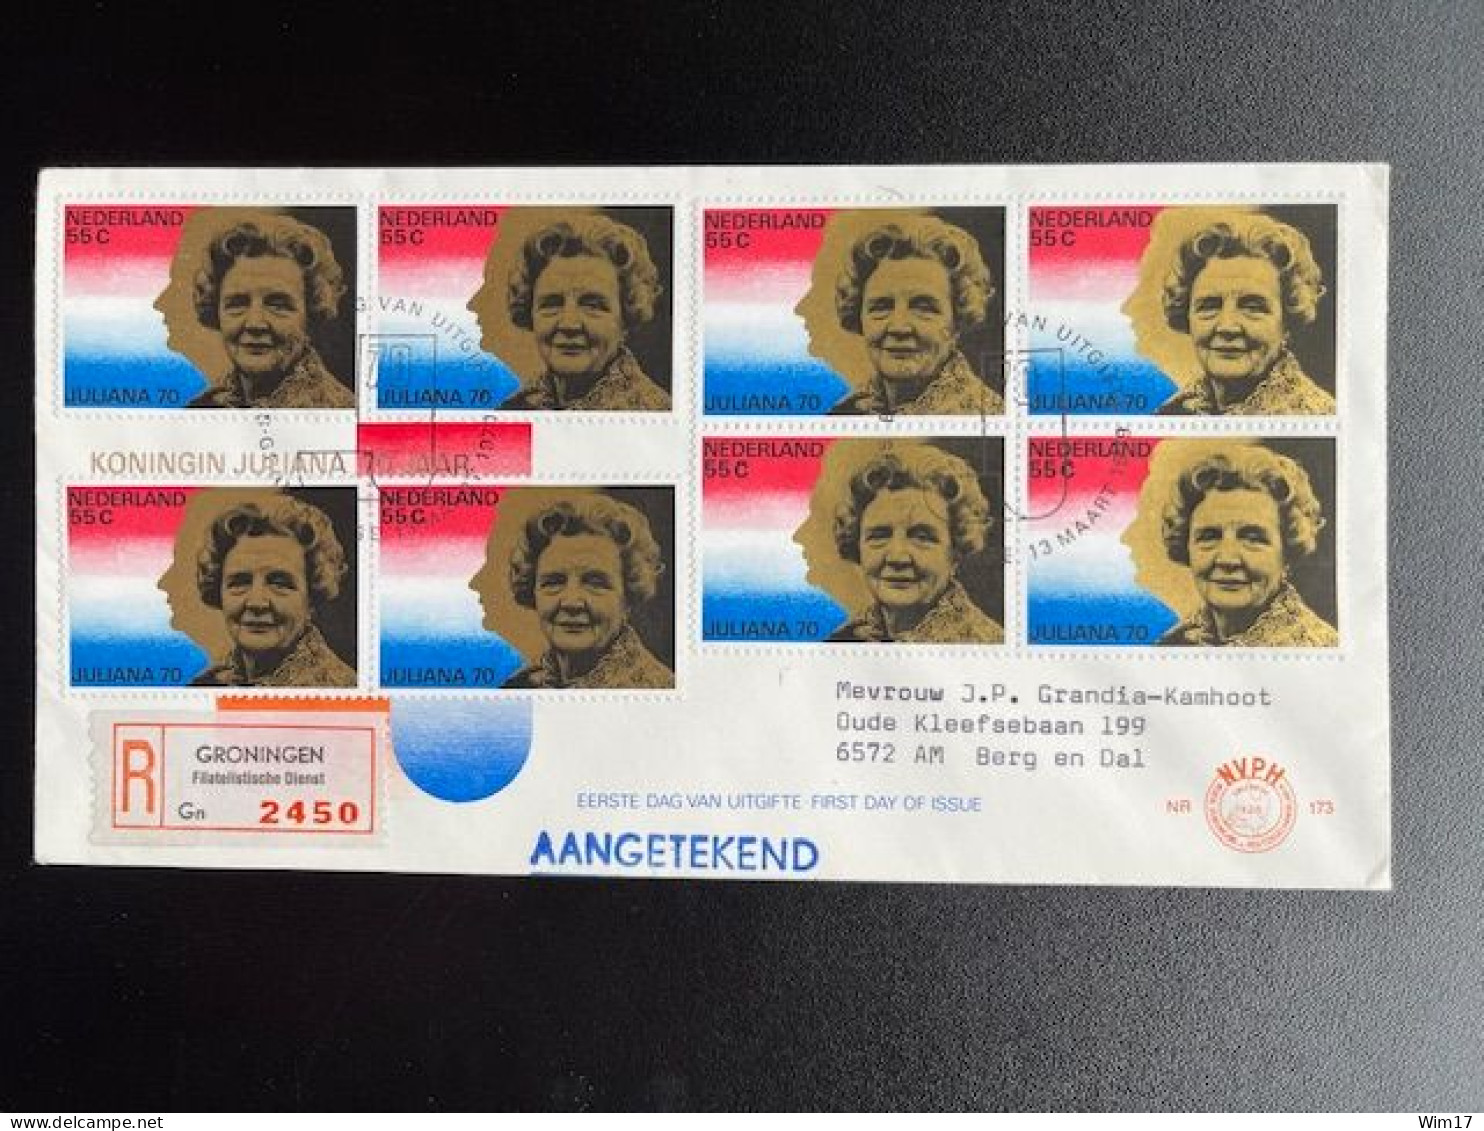 NETHERLANDS 1979 REGISTERED LETTER GRONINGEN FILATELISTISCHE DIENST TO BERG EN DAL 13-03-1979 NEDERLAND AANGETEKEND - Briefe U. Dokumente